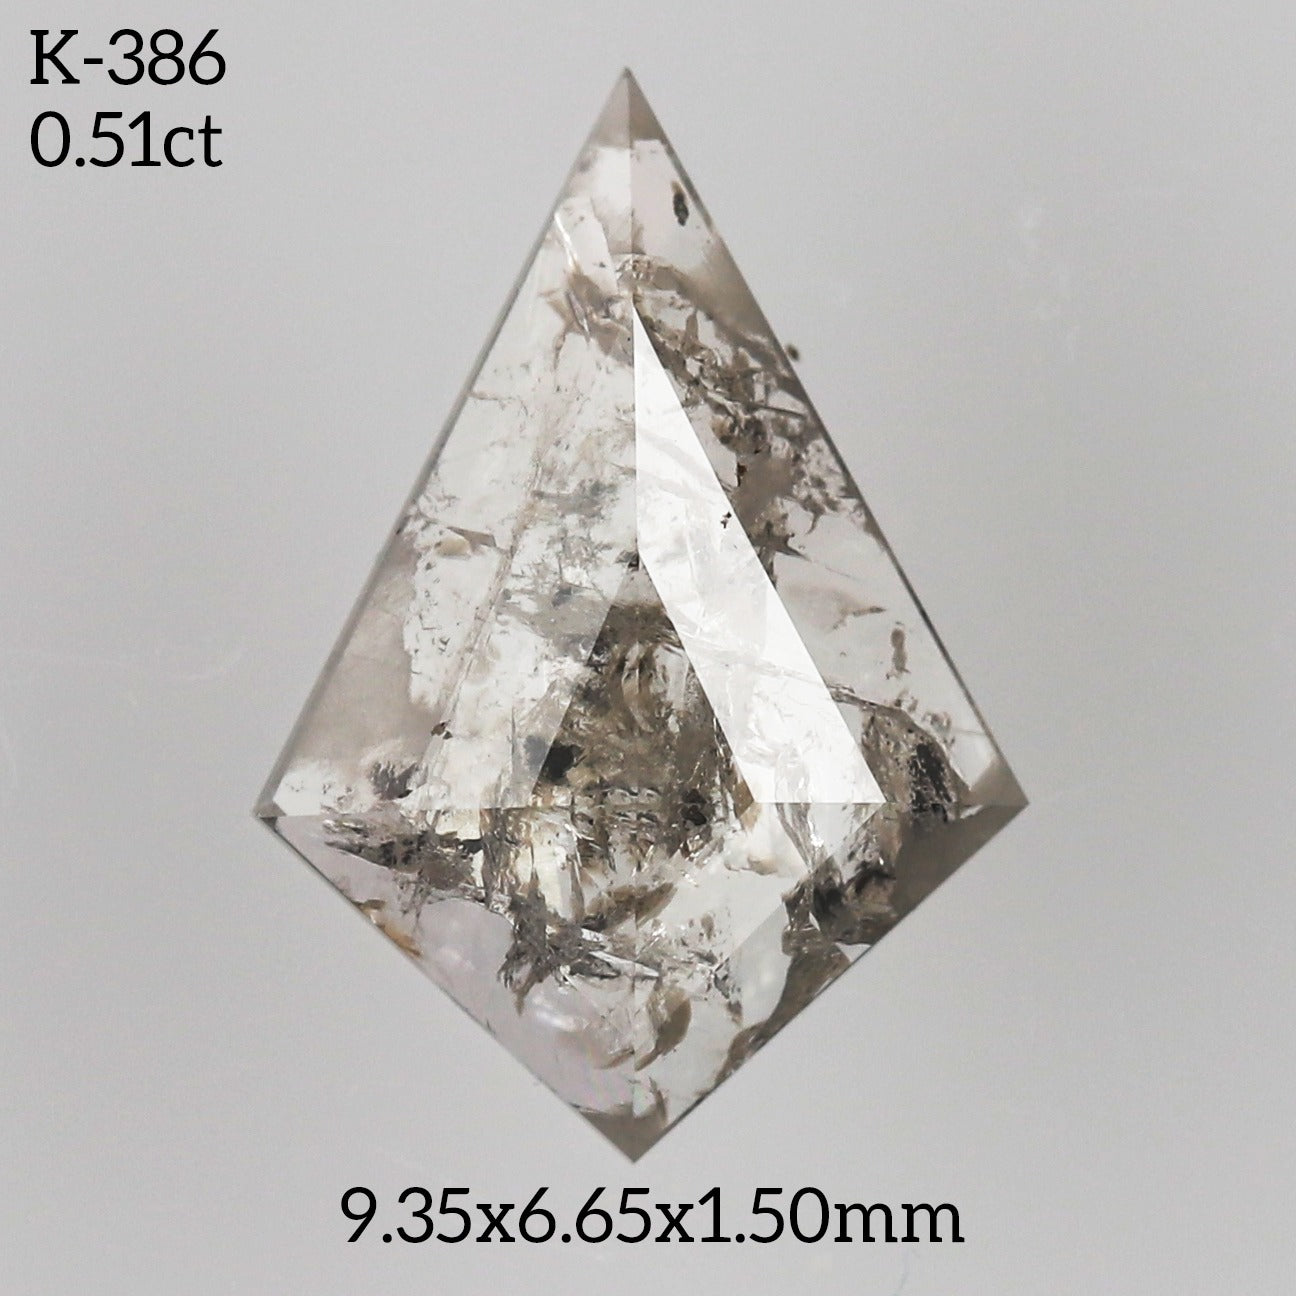 K386 - Salt and pepper kite diamond